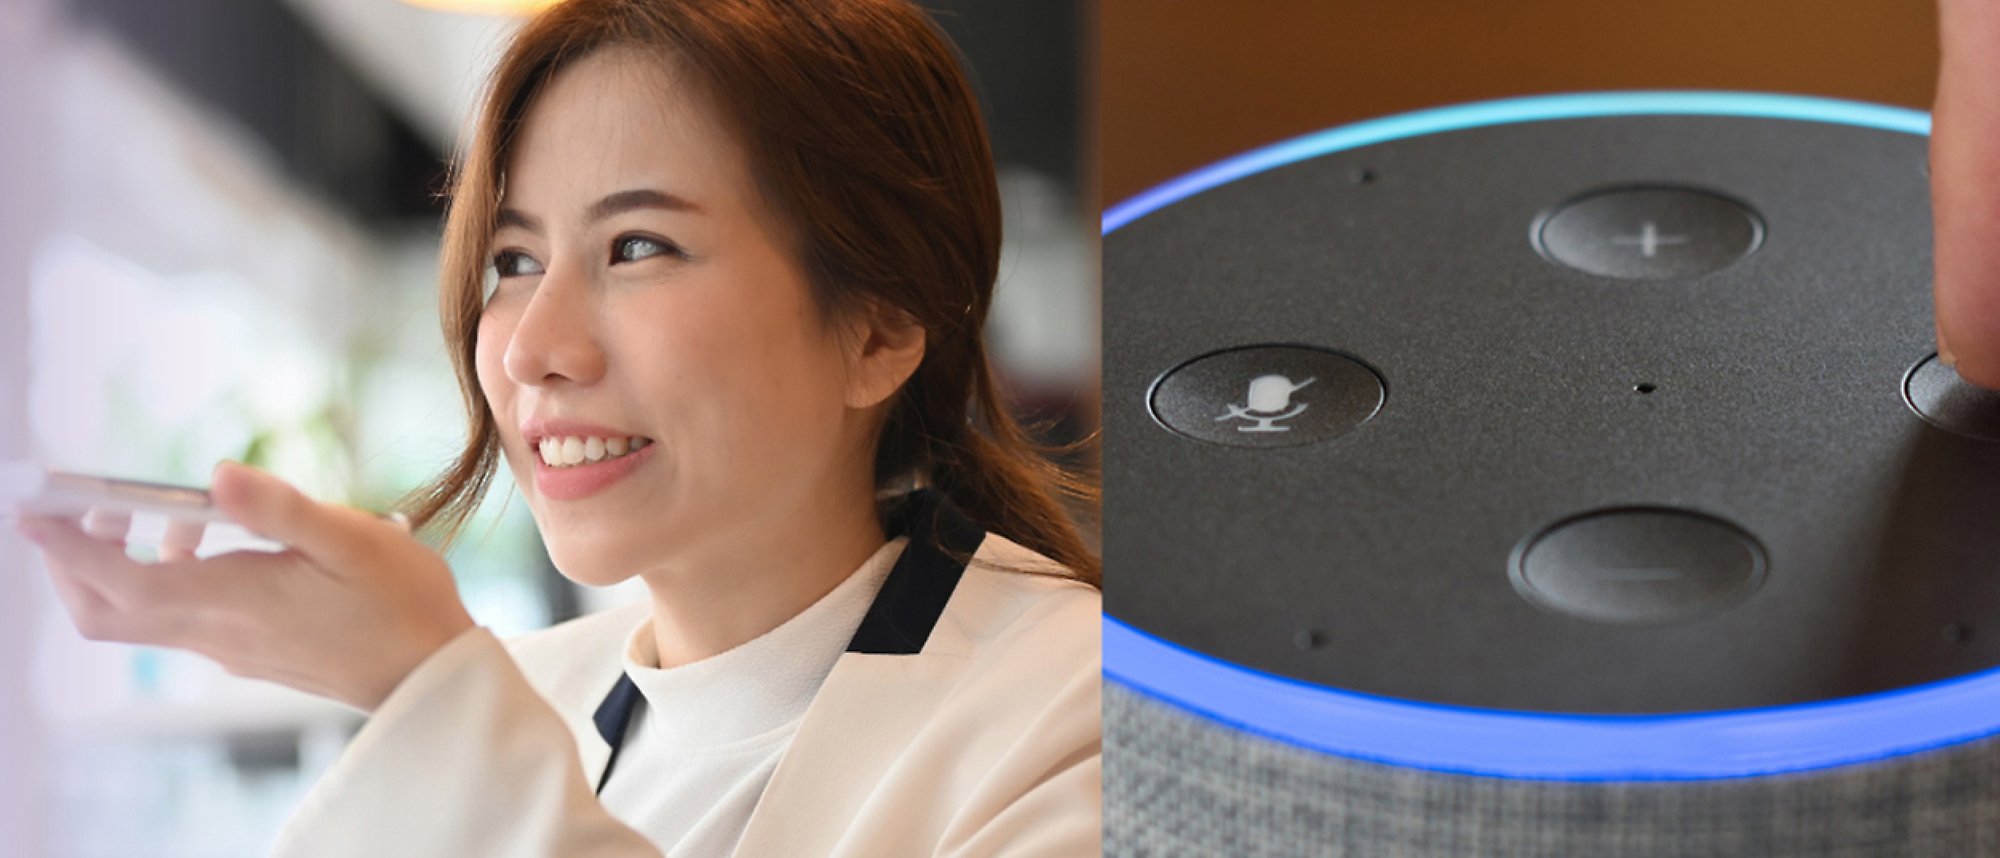 Donna che parla al telefono e un'immagine di Amazon Alexa con luci blu e controlli audio